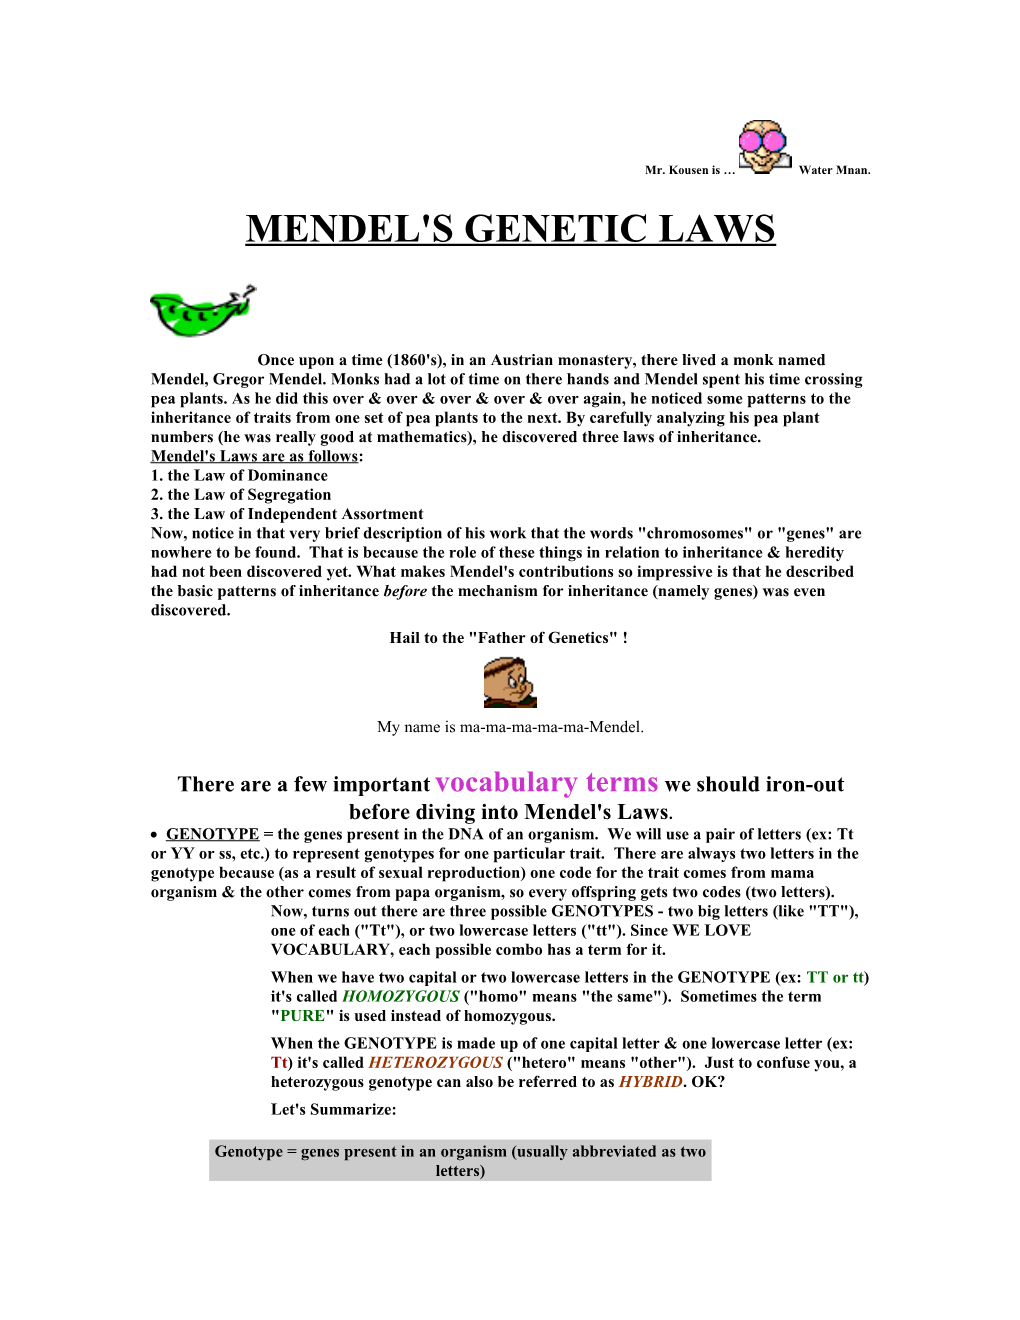 Mendel's Genetic Laws